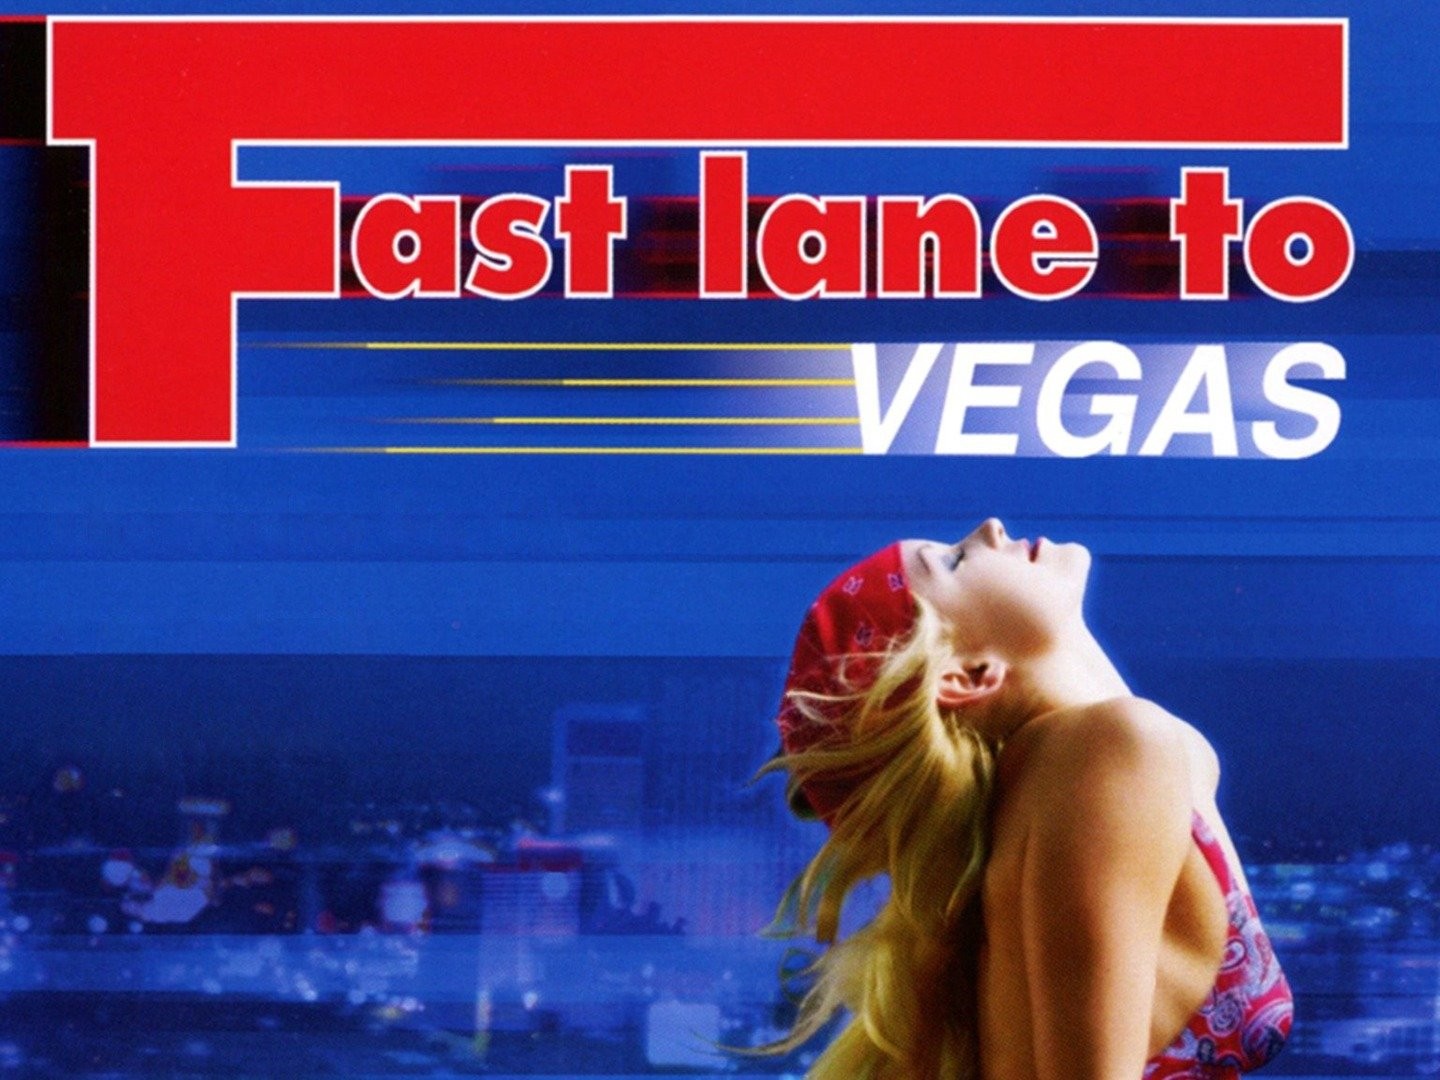 Fast lane to vegas movie